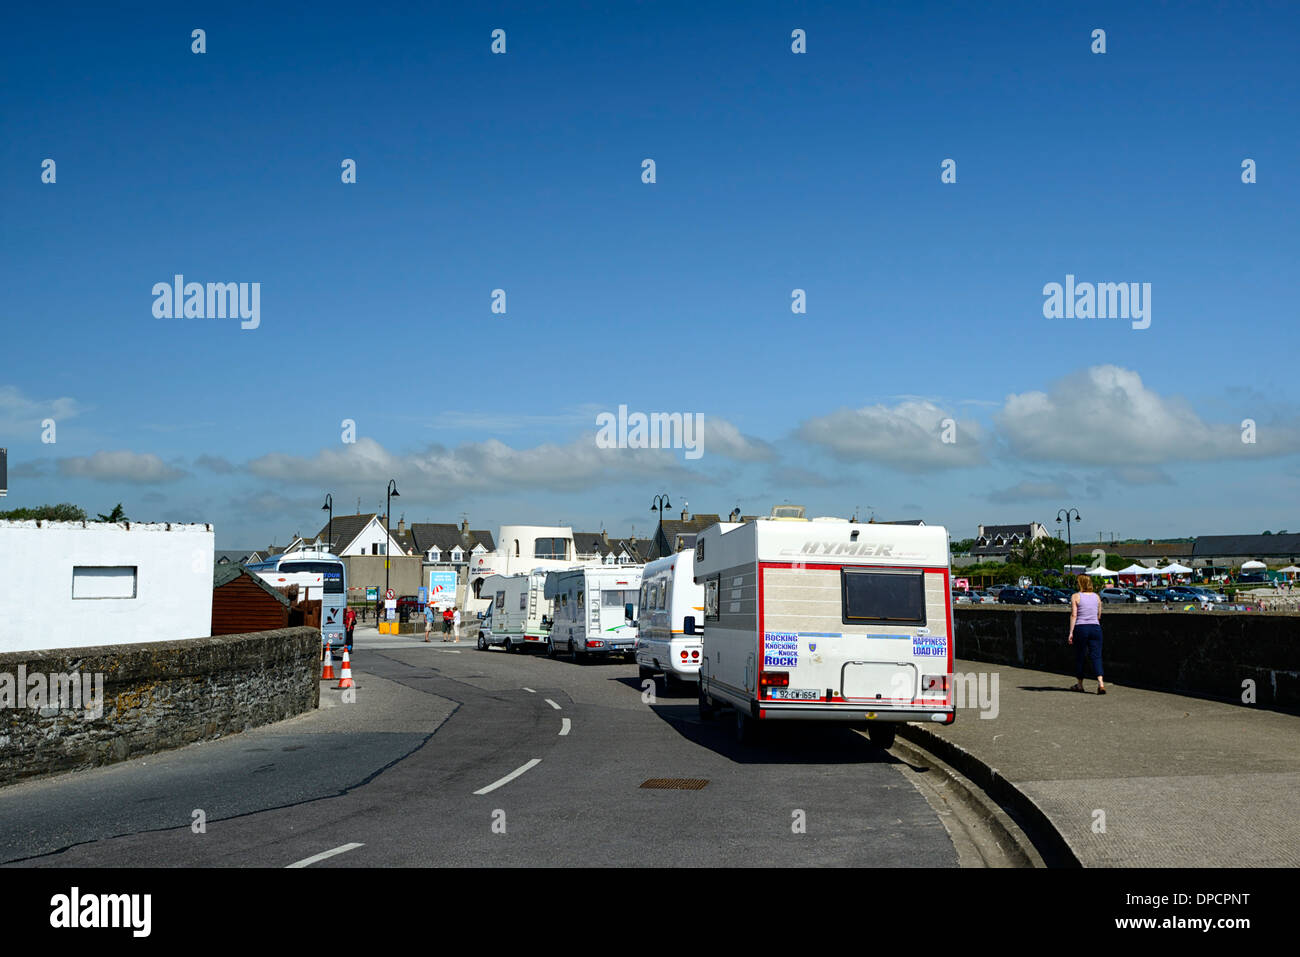 Ligne ligne de maison mobile homes caravanes caravane Irlande ardmore municipal Banque D'Images